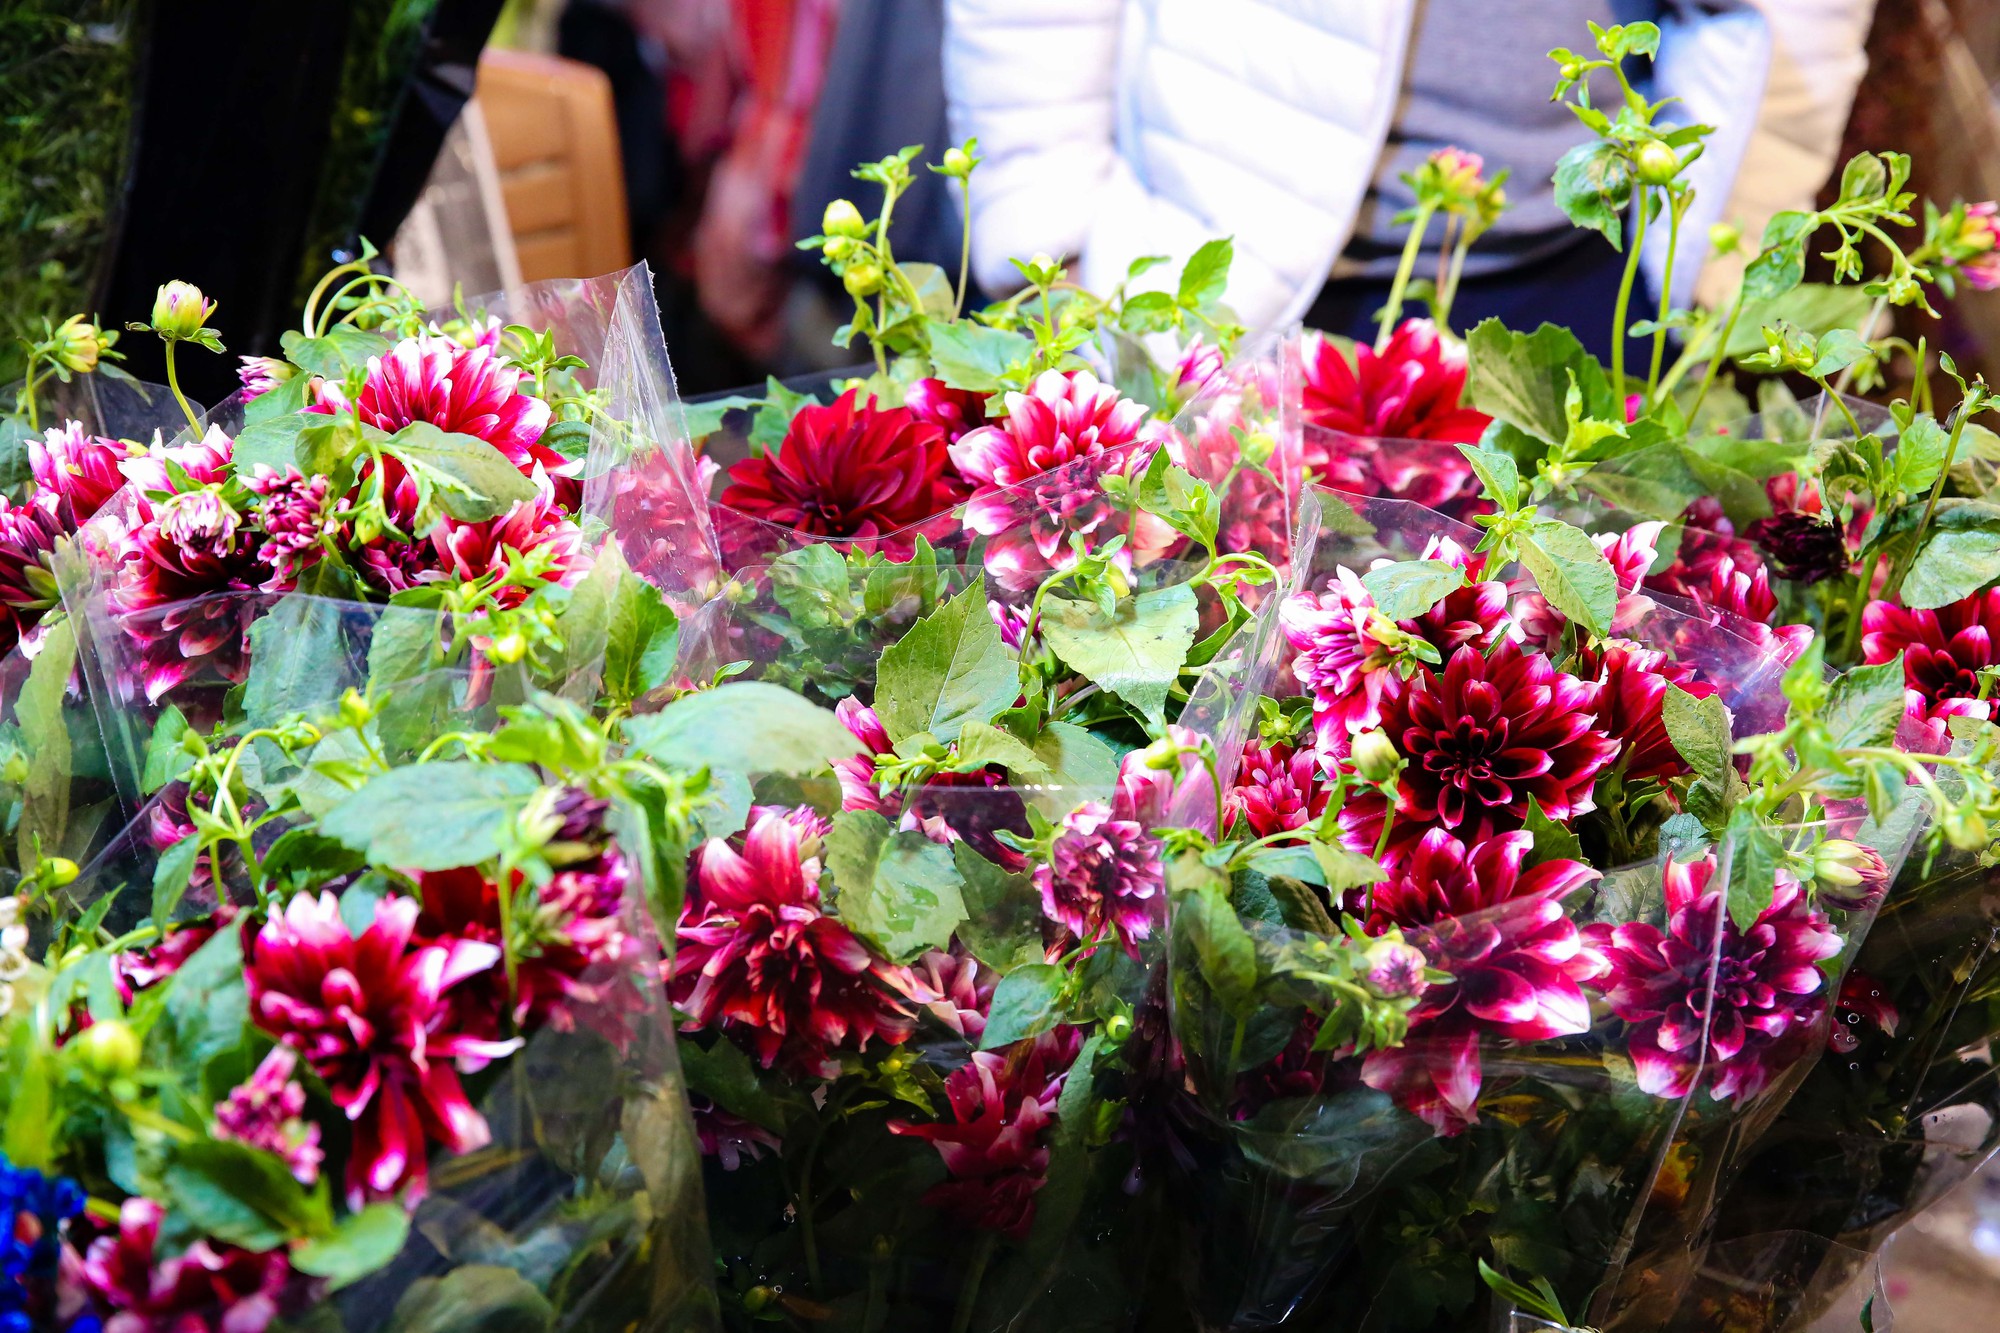 Khung cảnh tấp nập tại chợ hoa Quảng An ngày cận Tết - Ảnh 5.